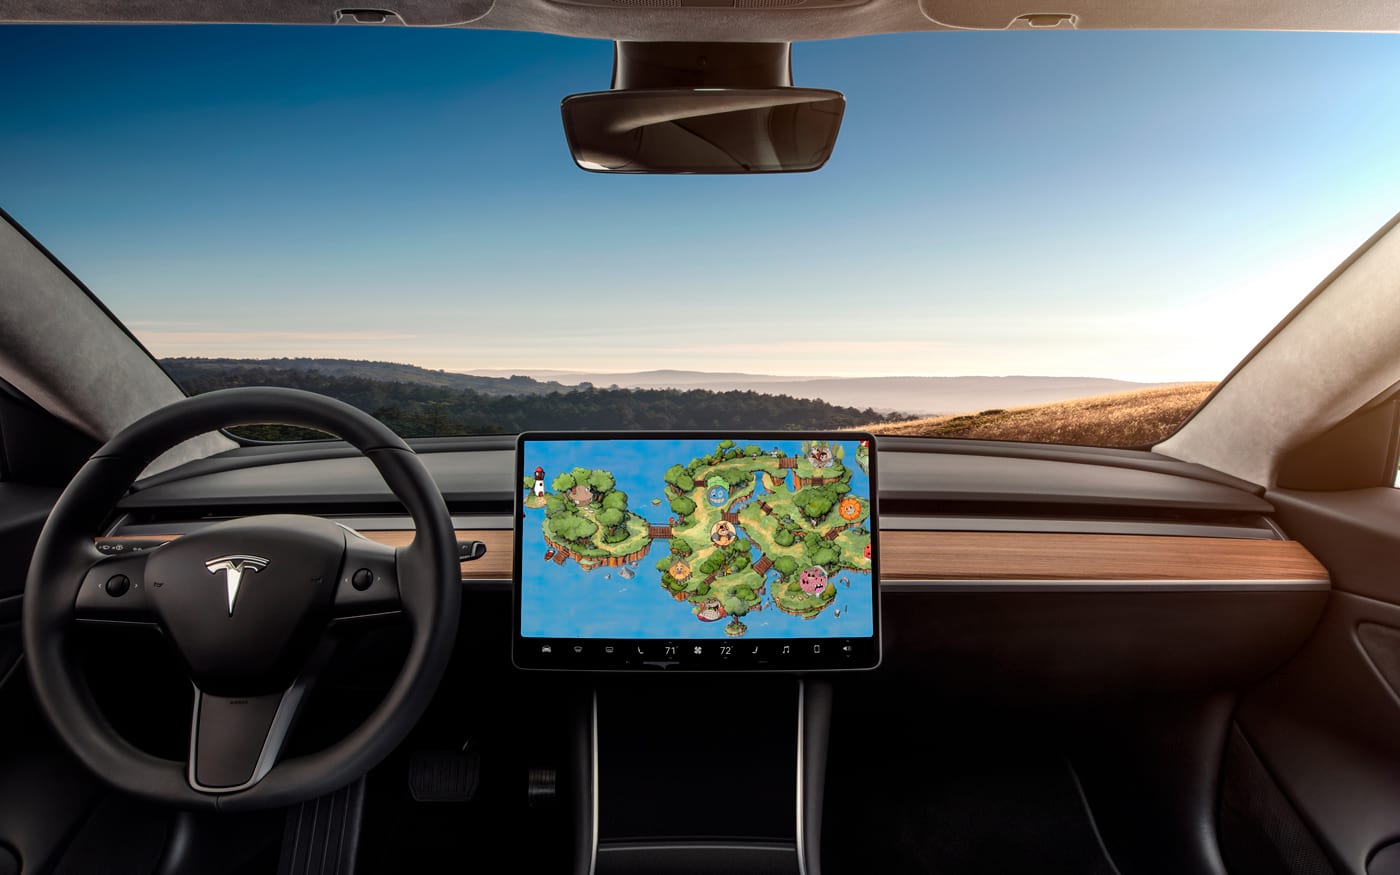 Cuphead pode ser jogado em carros Tesla